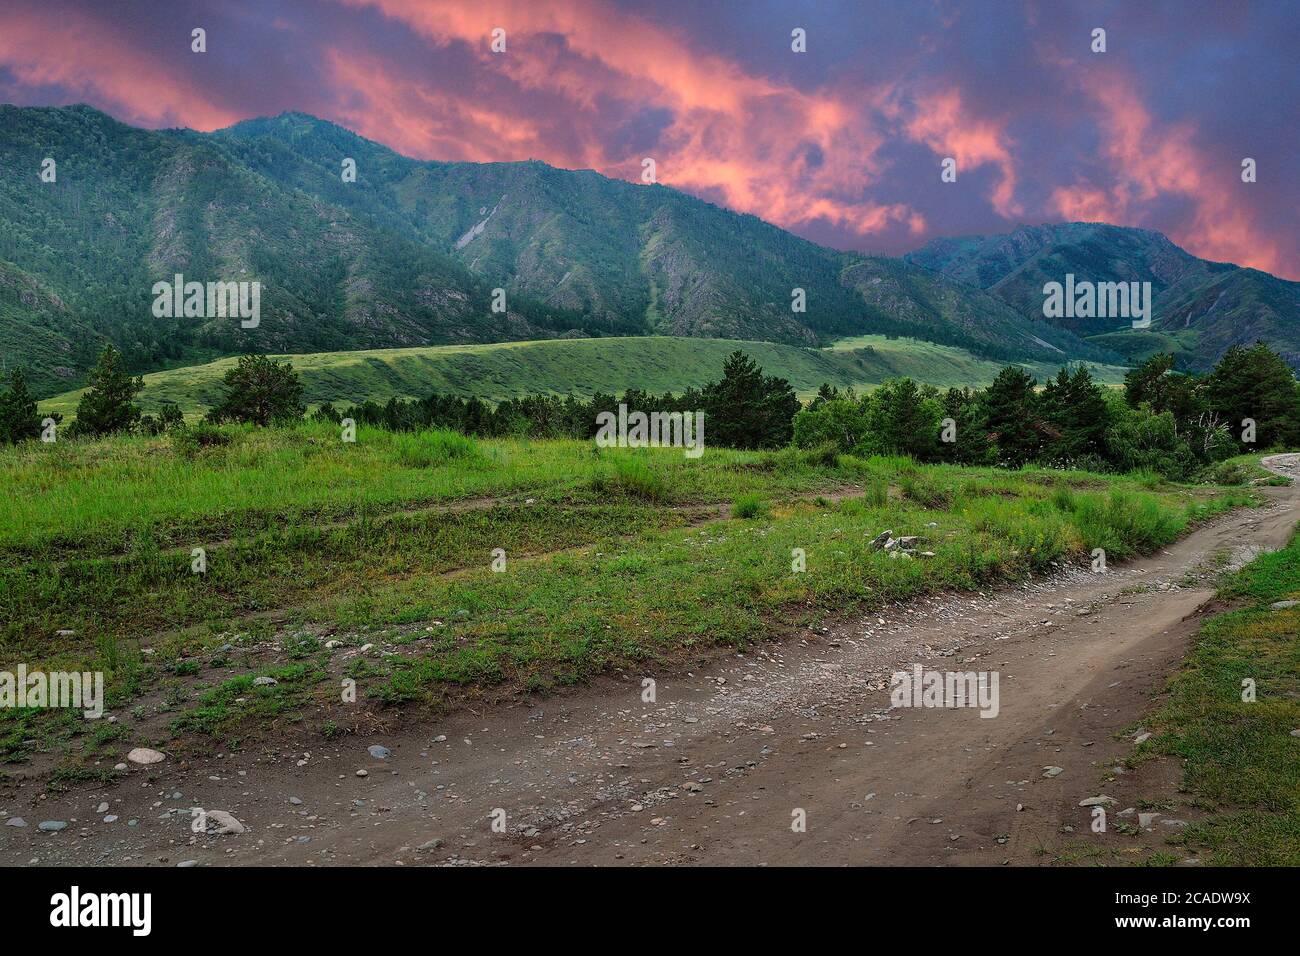 Tramonto di Crimson sulle montagne di Altai con foresta coperta, strada curva sporca che conduce attraverso valle verde. Bella sera estate montagna paesaggio w Foto Stock